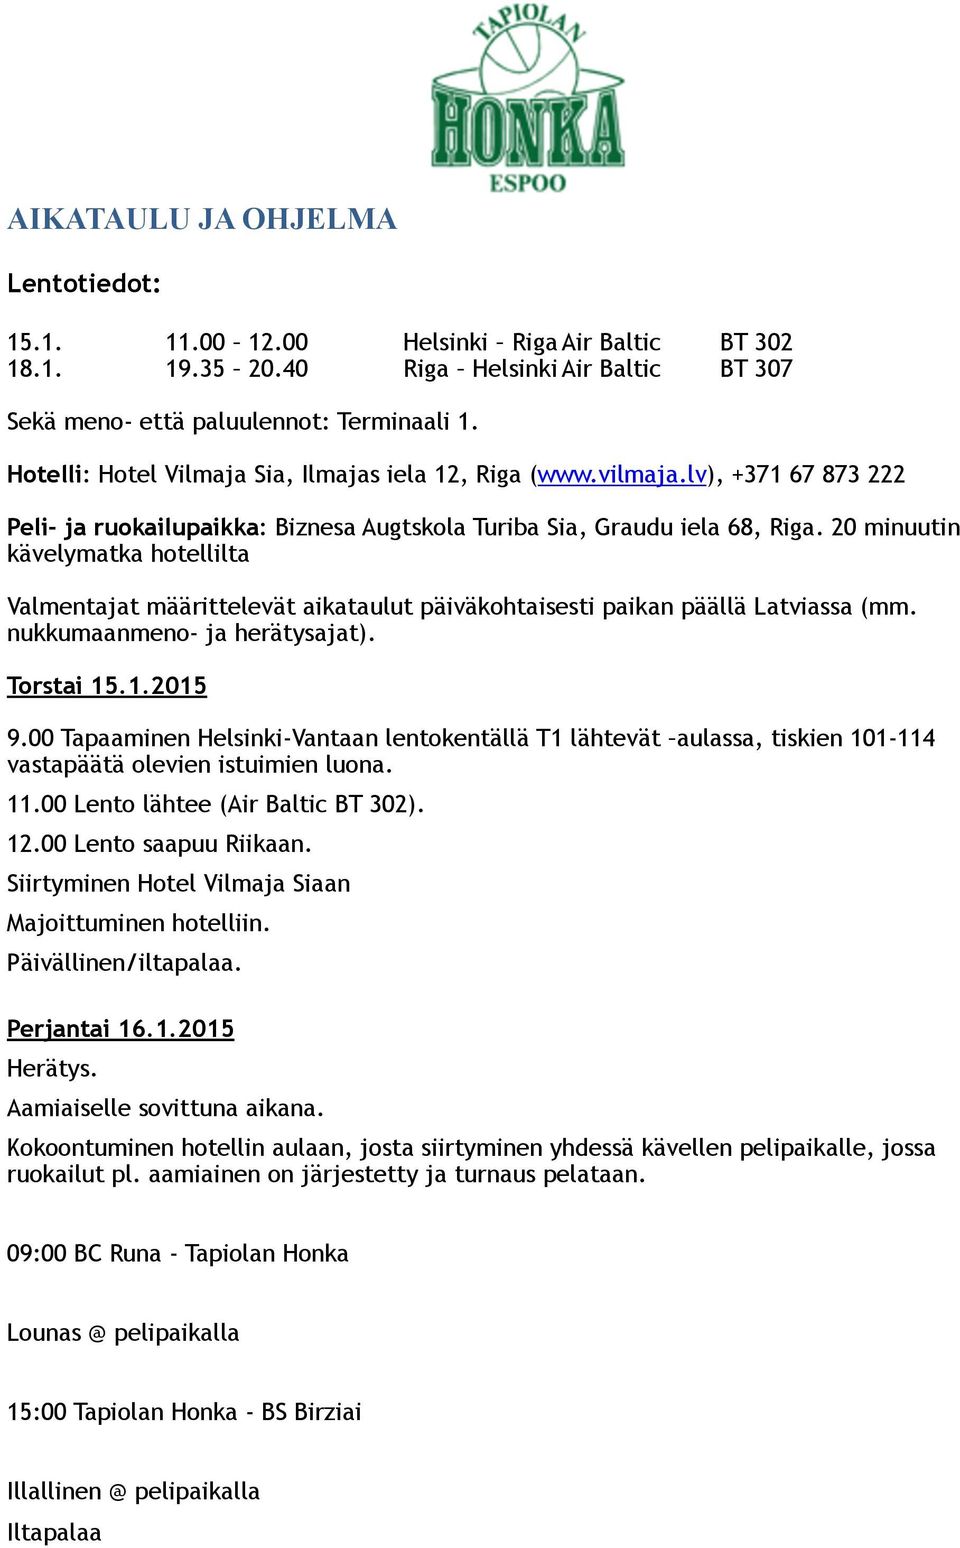 20 minuutin kävelymatka hotellilta Valmentajat määrittelevät aikataulut päiväkohtaisesti paikan päällä Latviassa (mm. nukkumaanmeno- ja herätysajat). Torstai 15.1.2015 9.